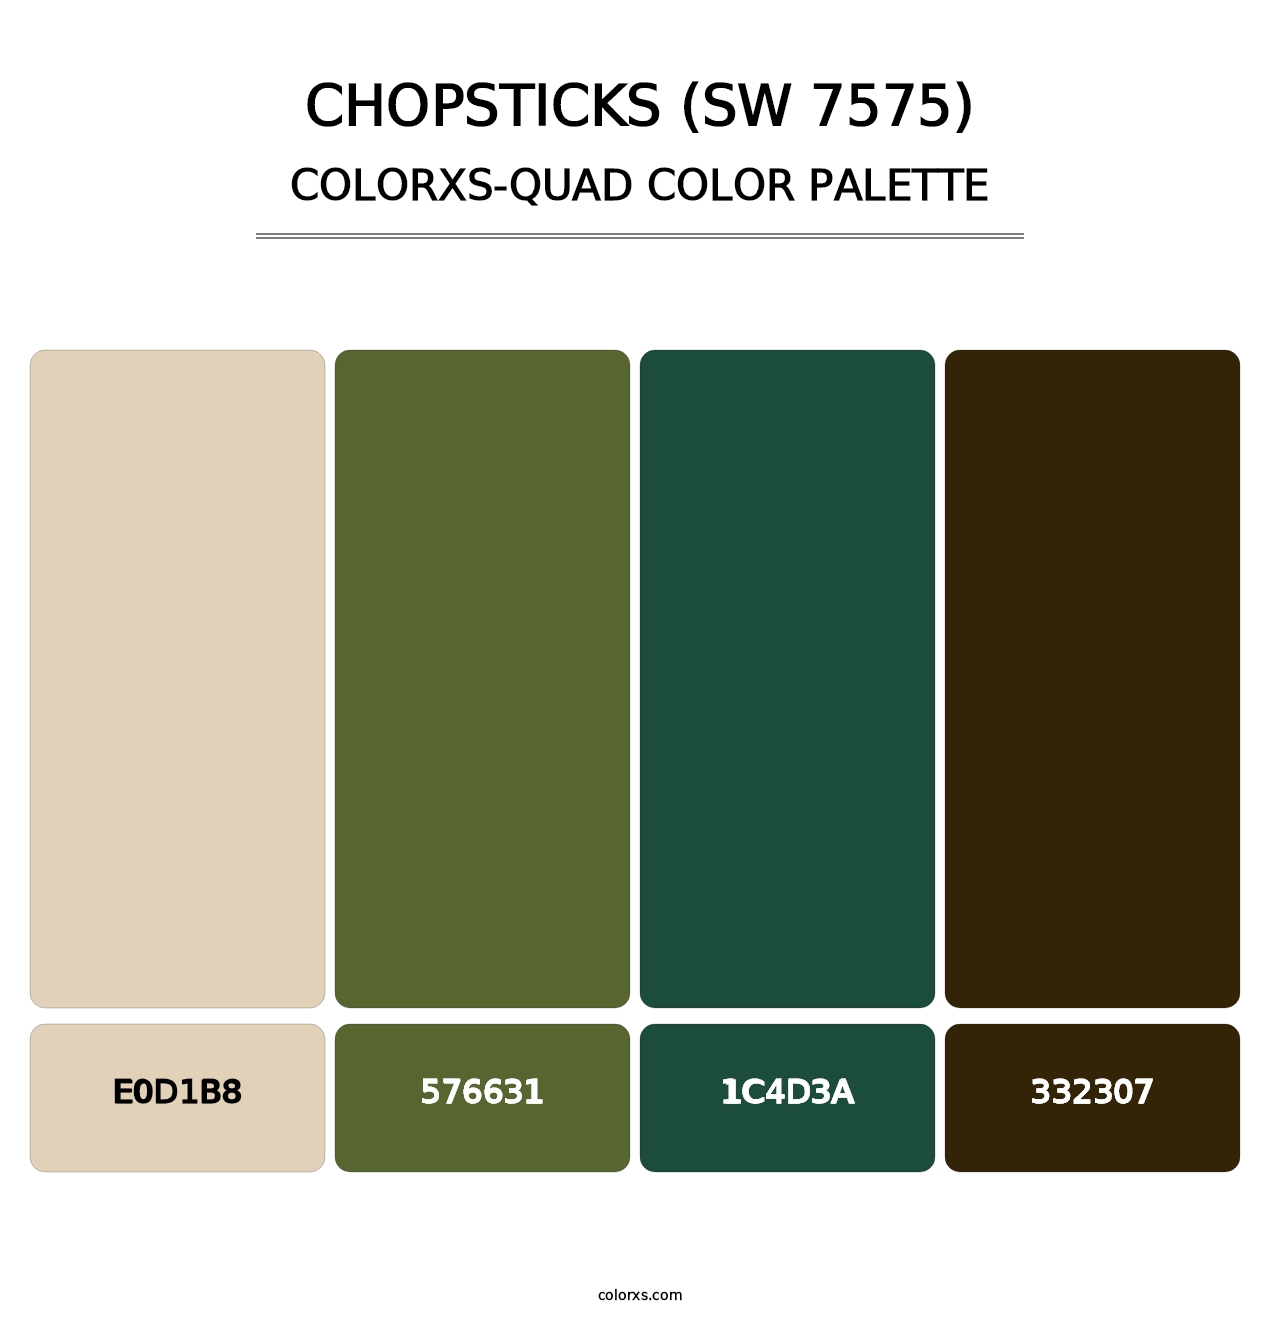 Chopsticks (SW 7575) - Colorxs Quad Palette